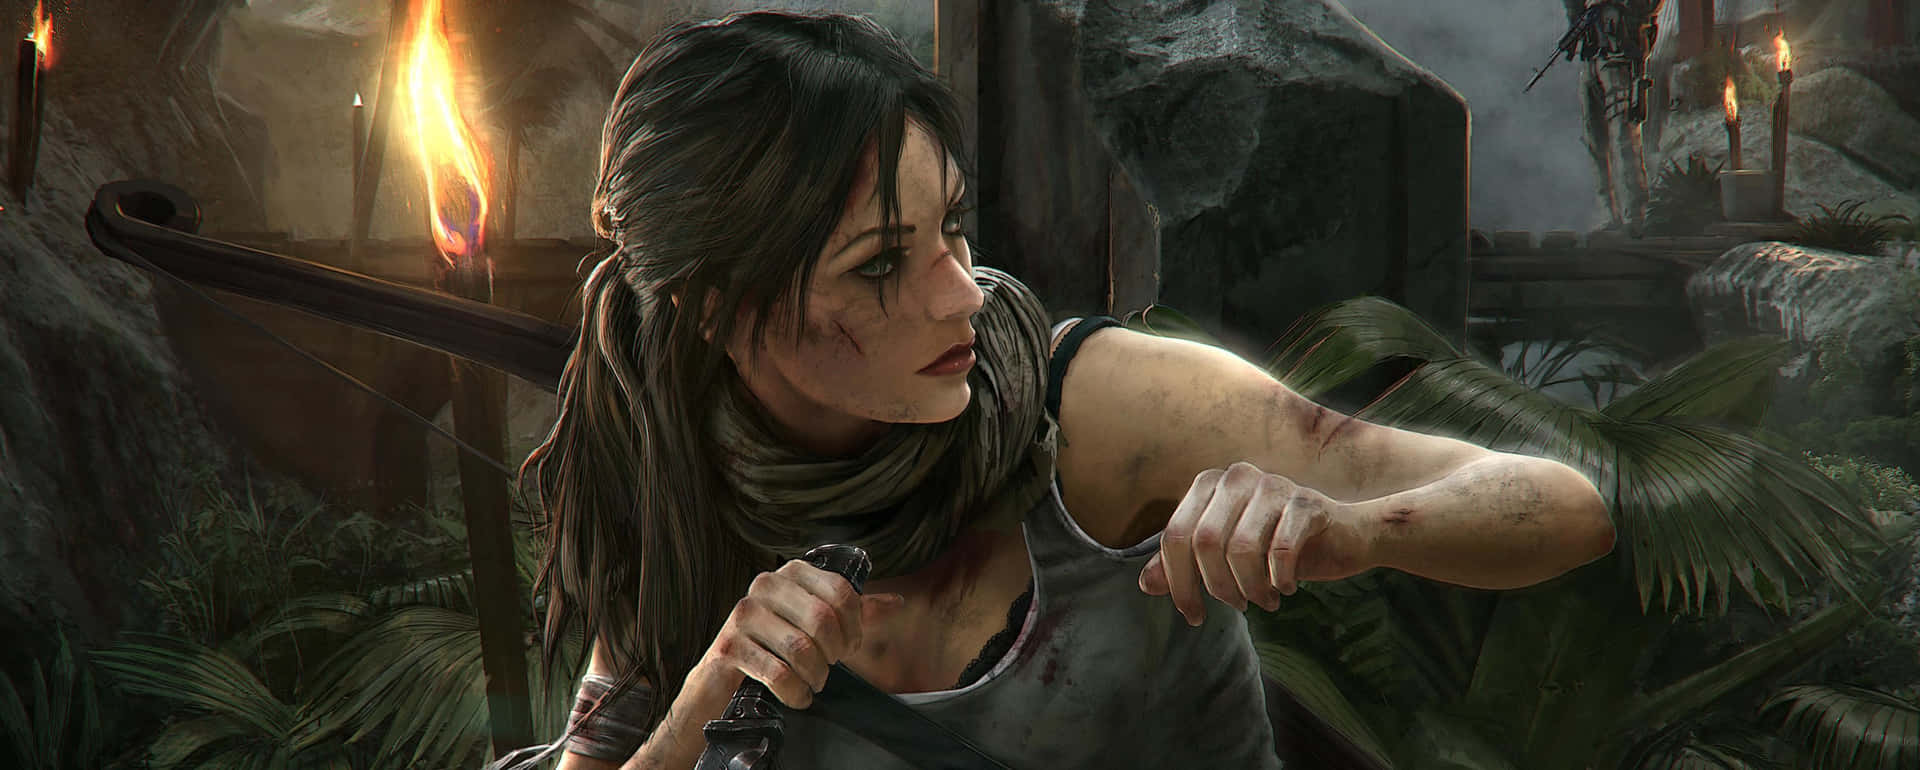 Laracroft Kampf 3440x1440p Hintergrund Von Rise Of The Tomb Raider